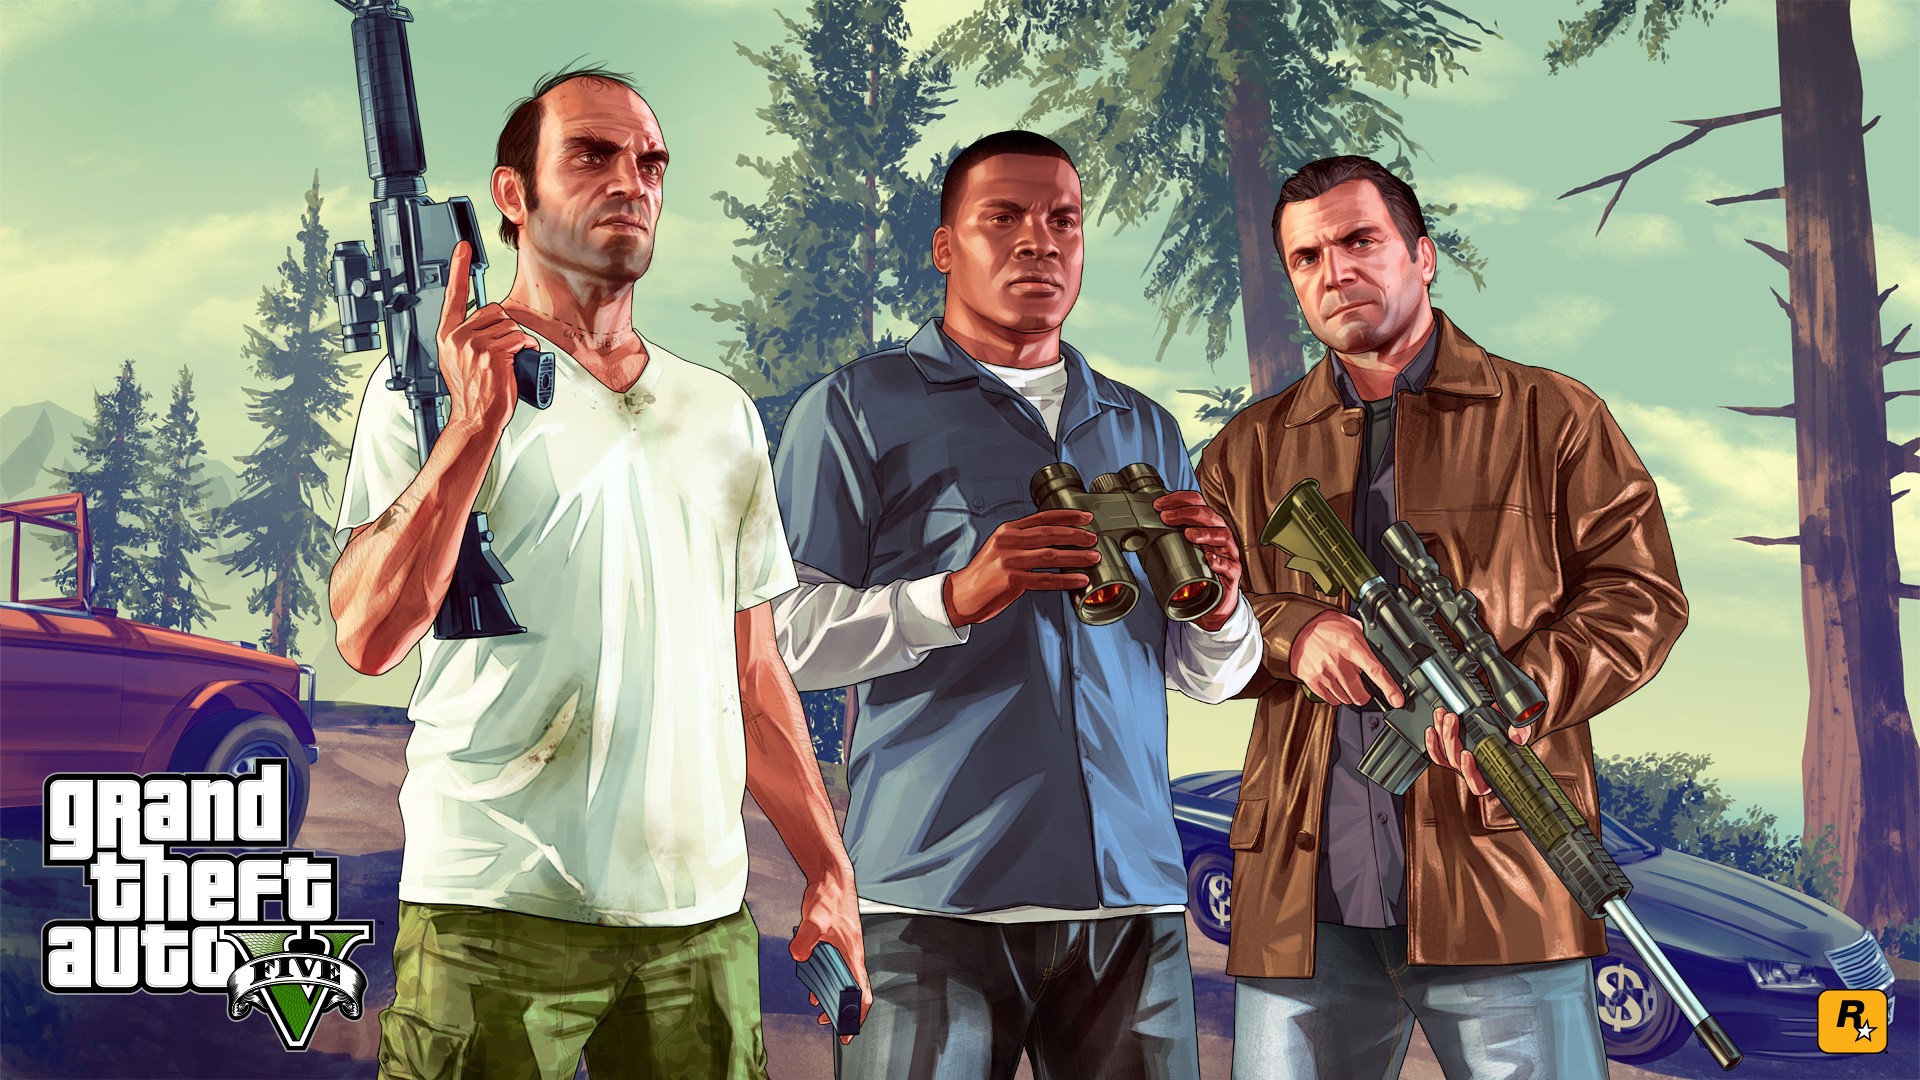 Jogo Grand Theft Auto V para PC, Steam - Digital para Download